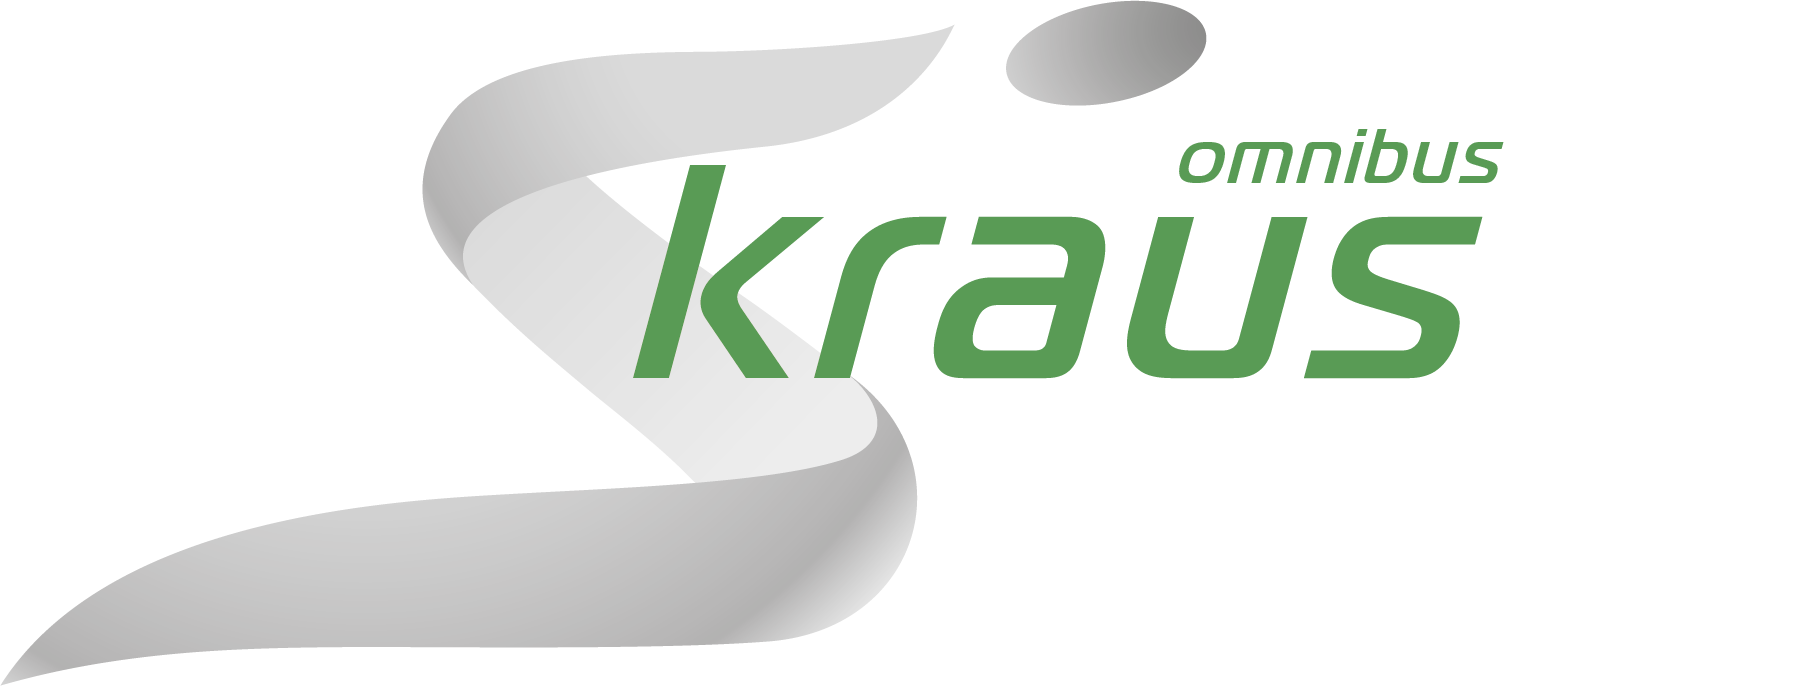 Omnibus Kraus Reisen - Logo